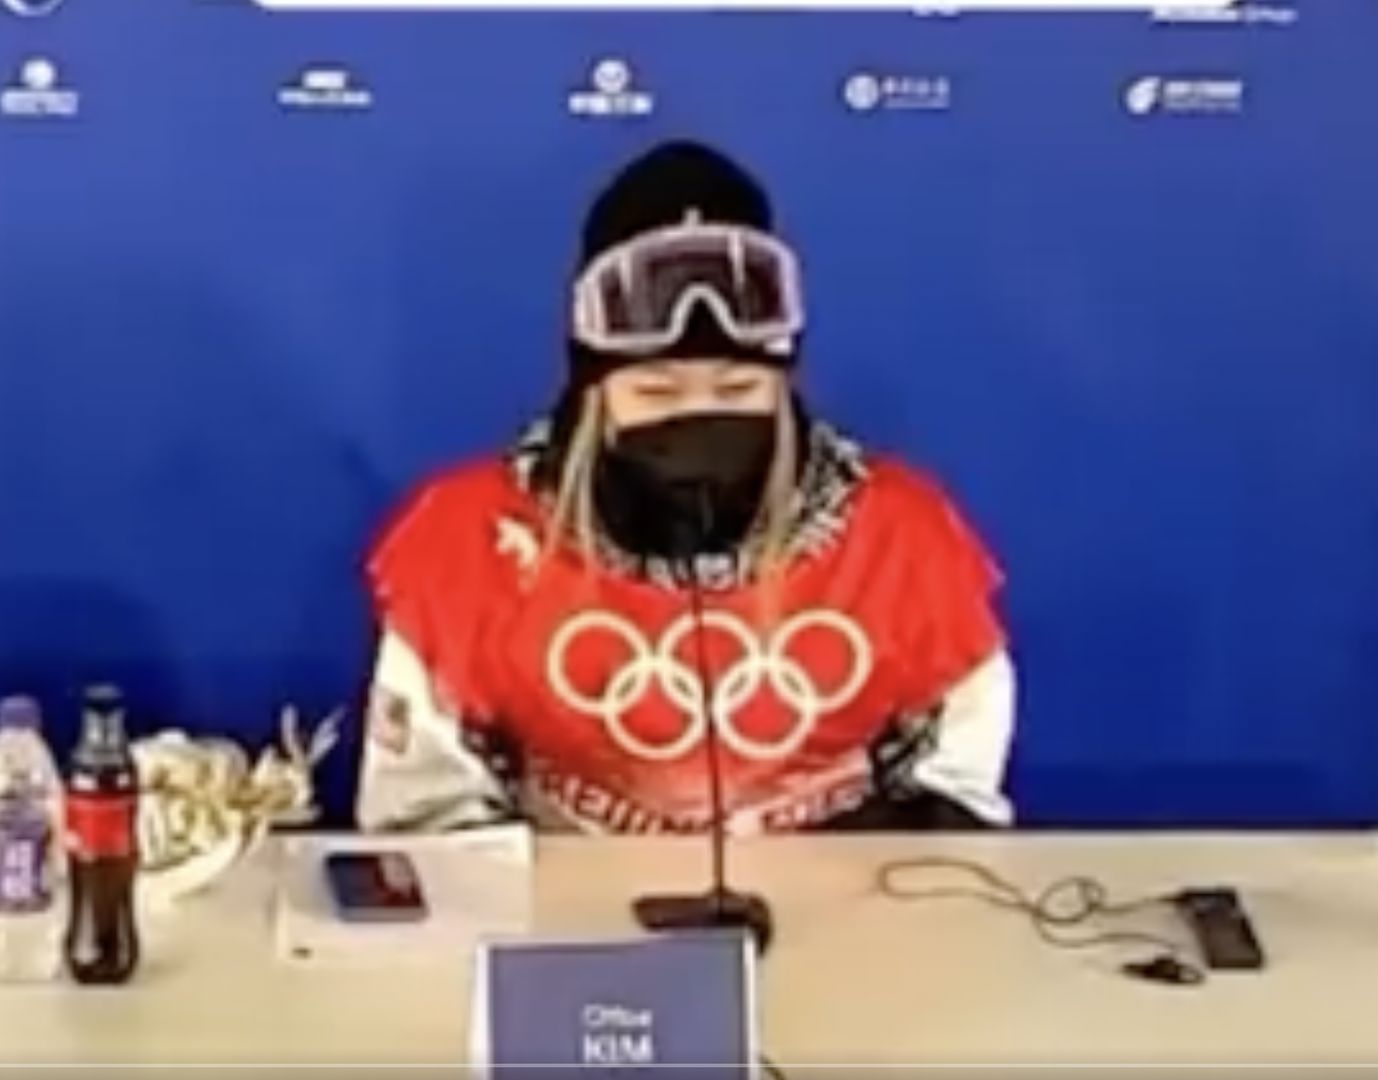 Mistrzyni olimpijska zaskoczyła podczas konferencji. O to poprosiła dziennikarzy